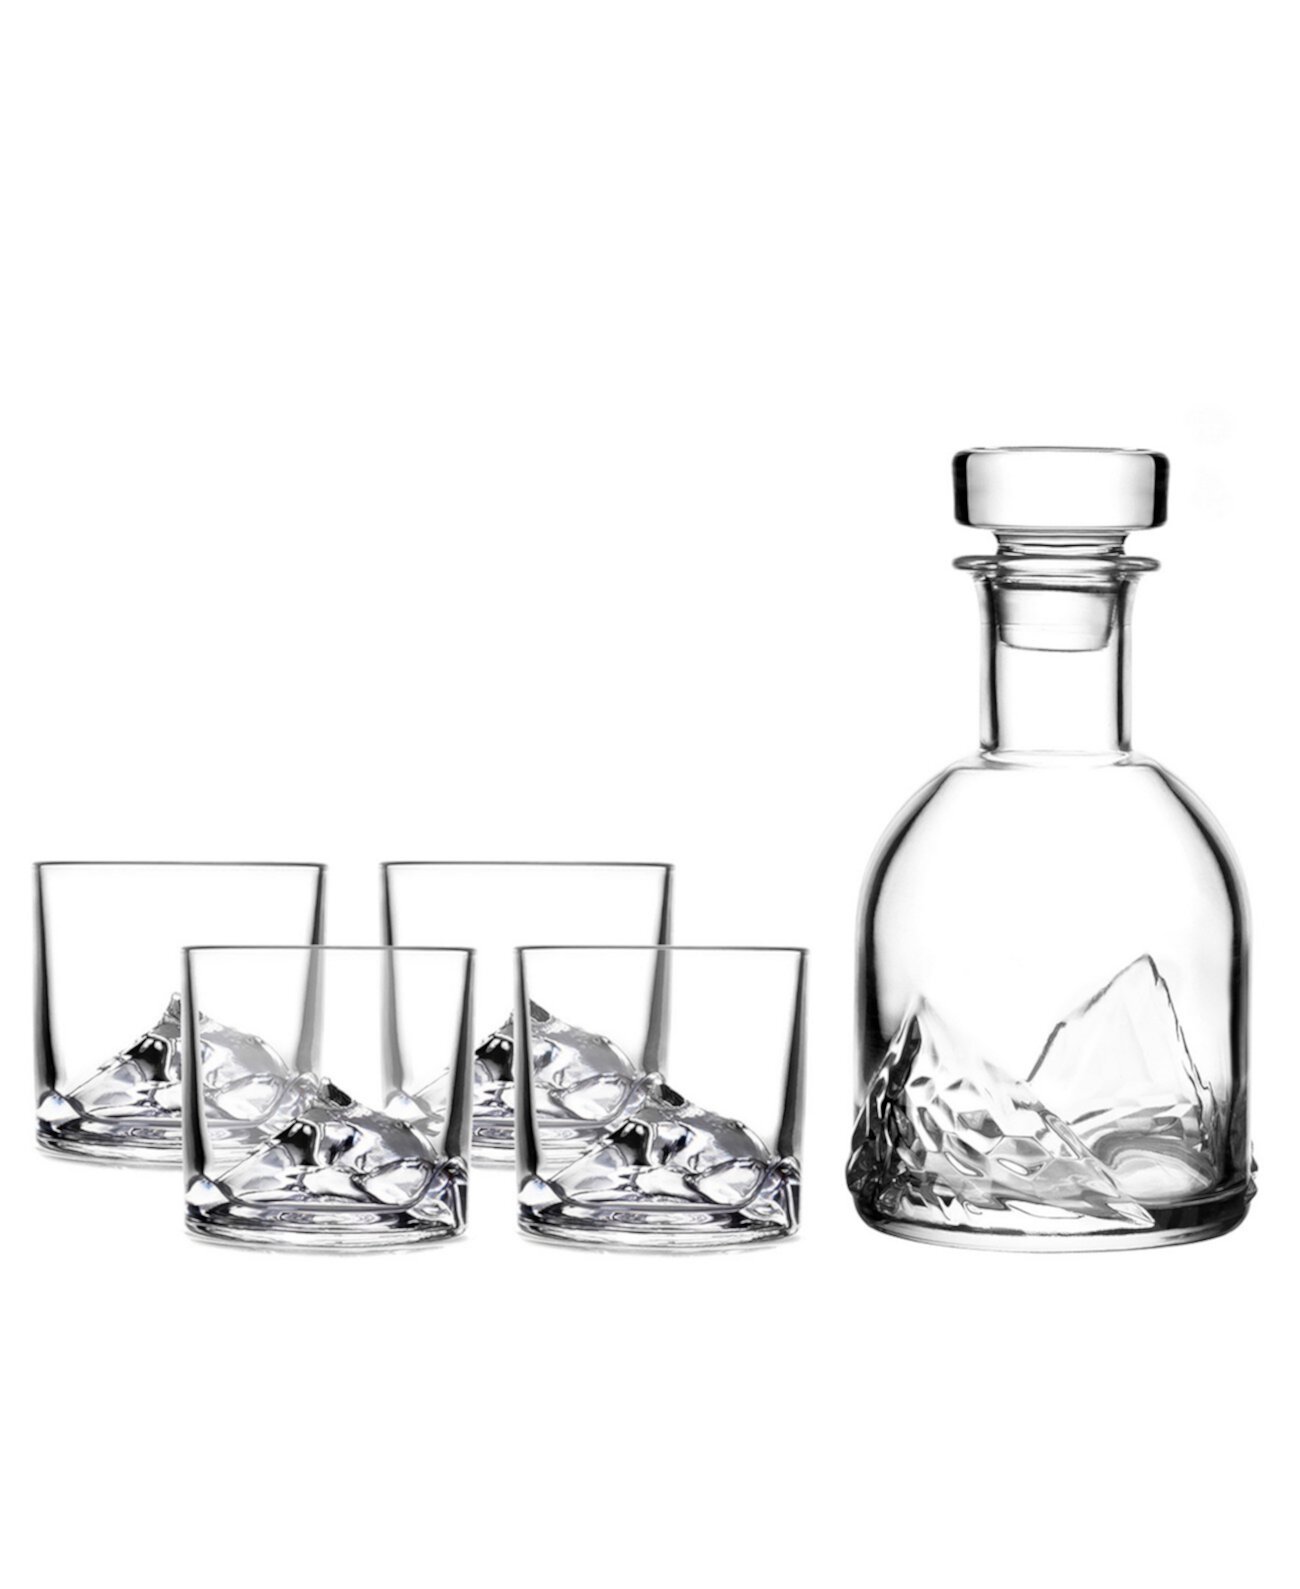 Хрустальный графин для виски Mount Everest со стаканами, набор из 5 шт. Liiton